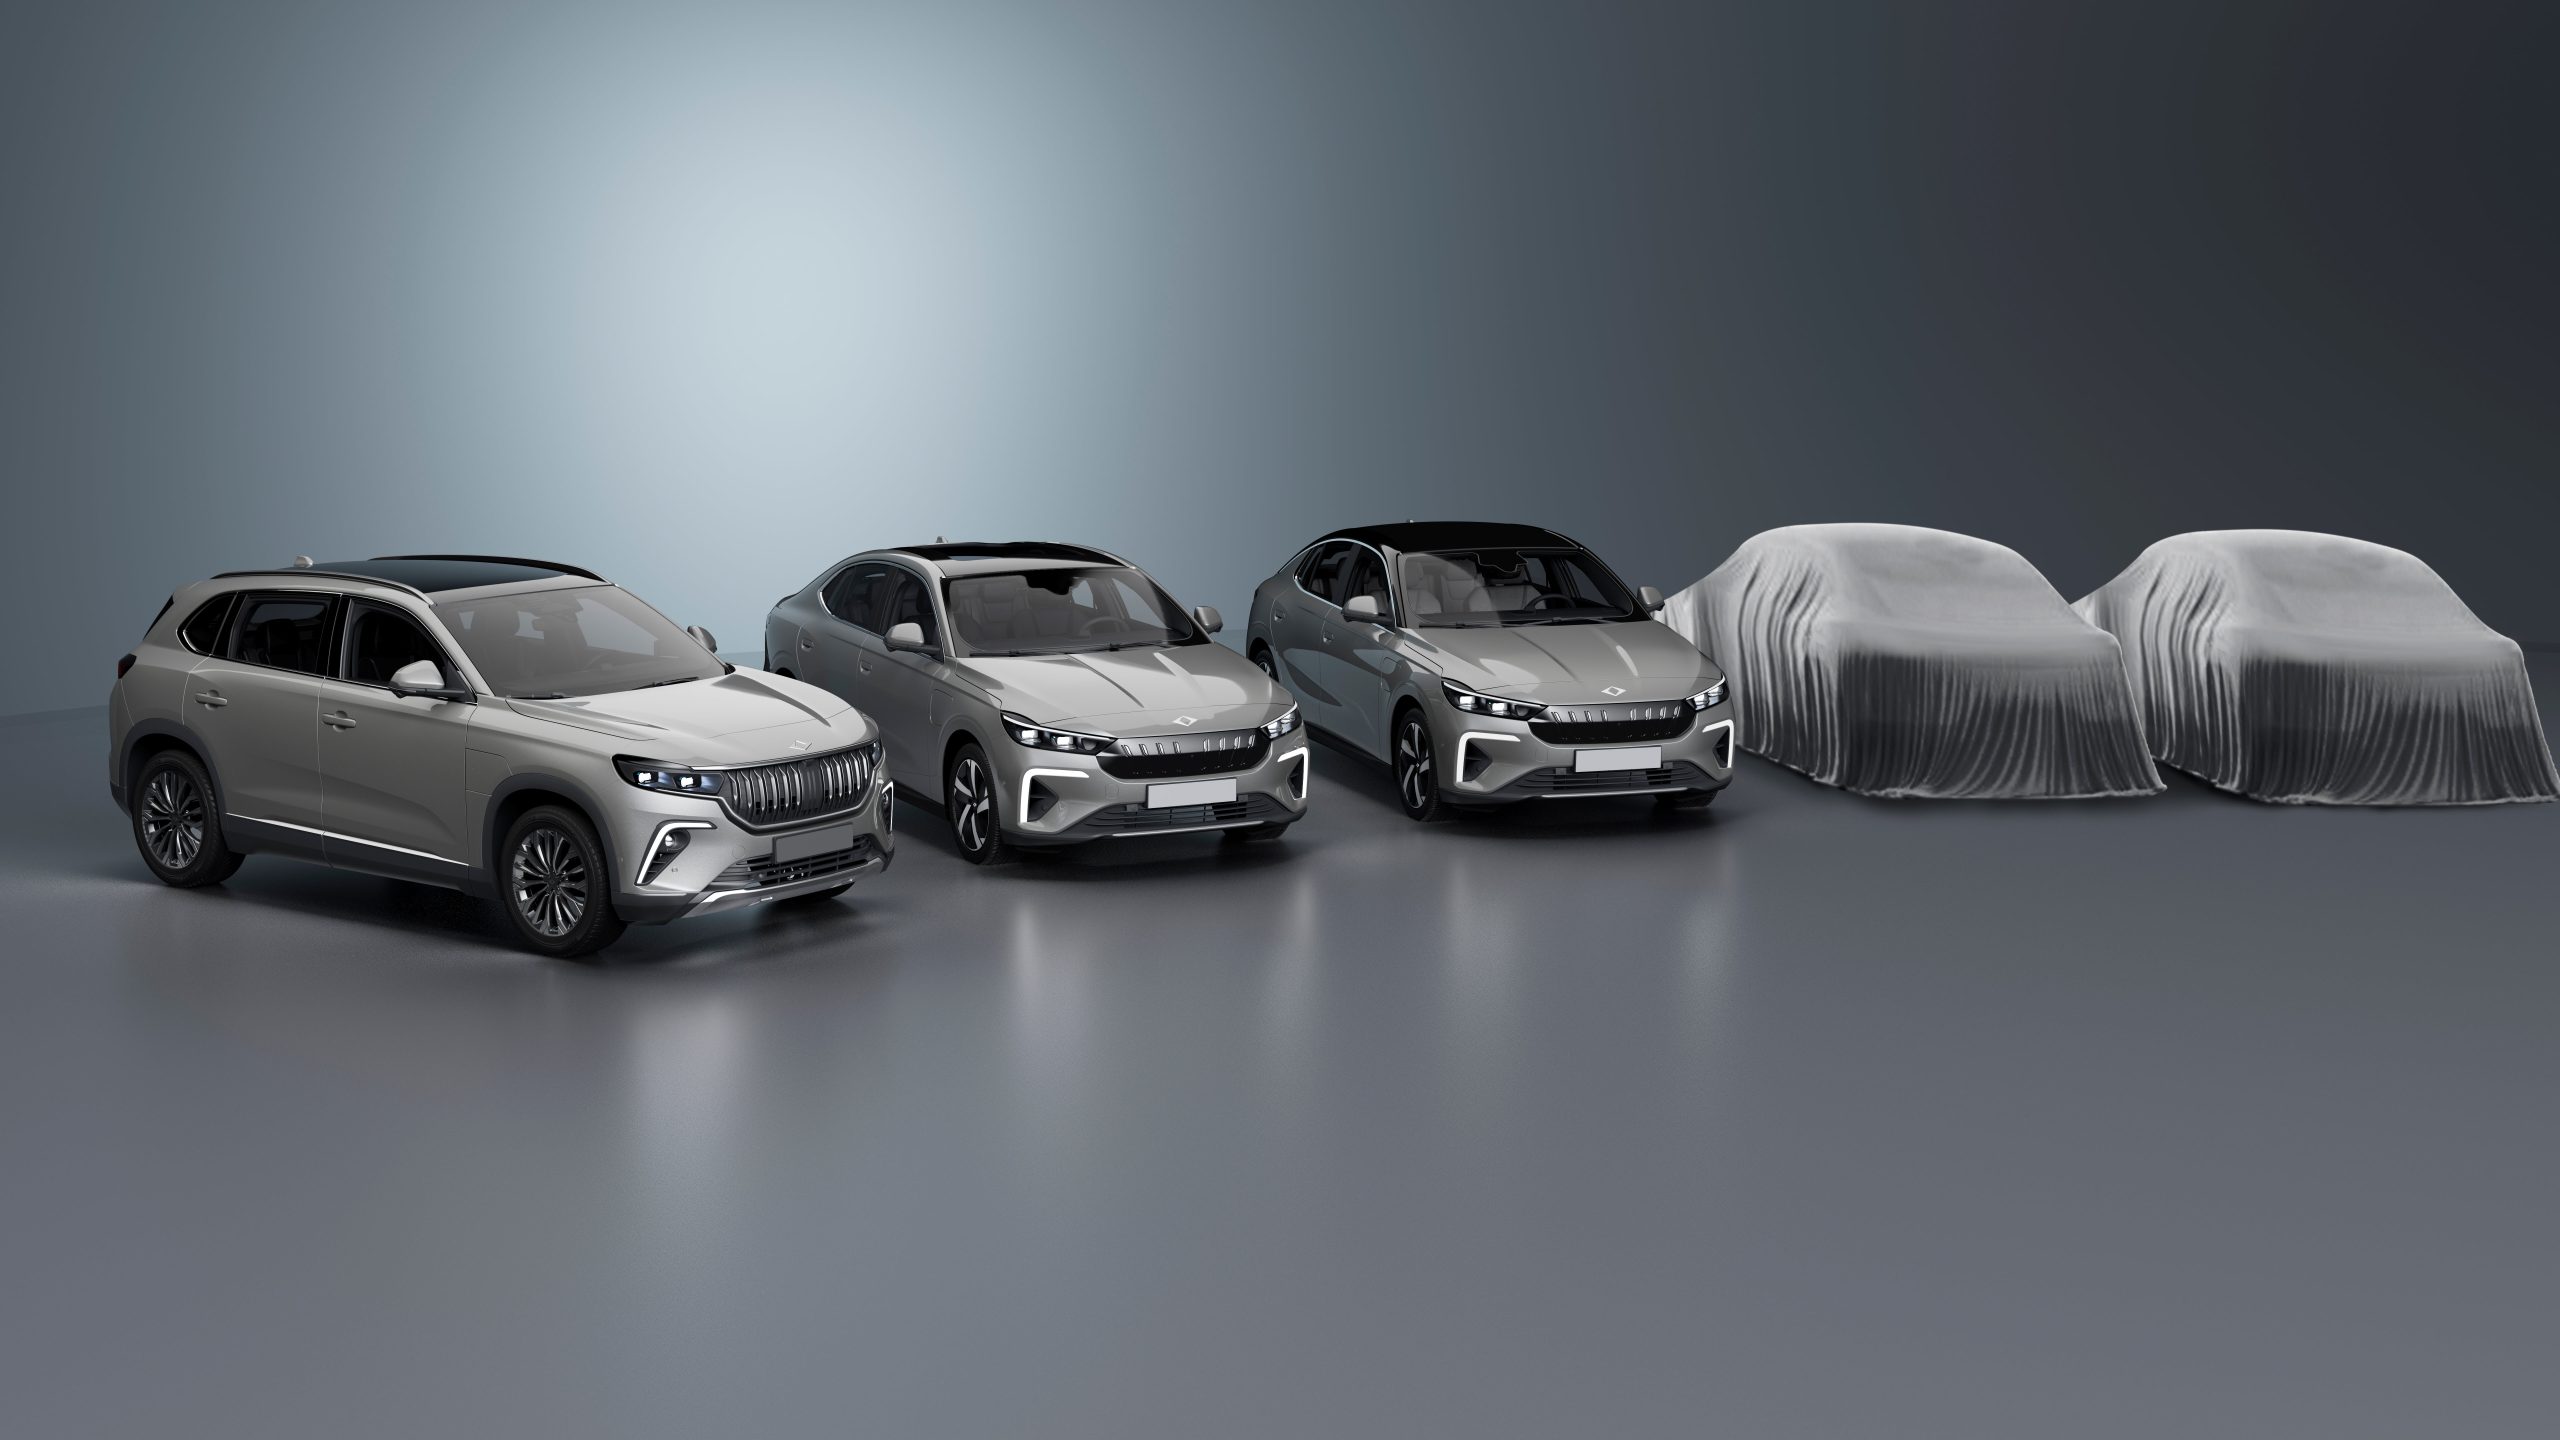 Togg, C-Sedan ve C-X Coupé modellerinin görsellerini ilk kez paylaştı